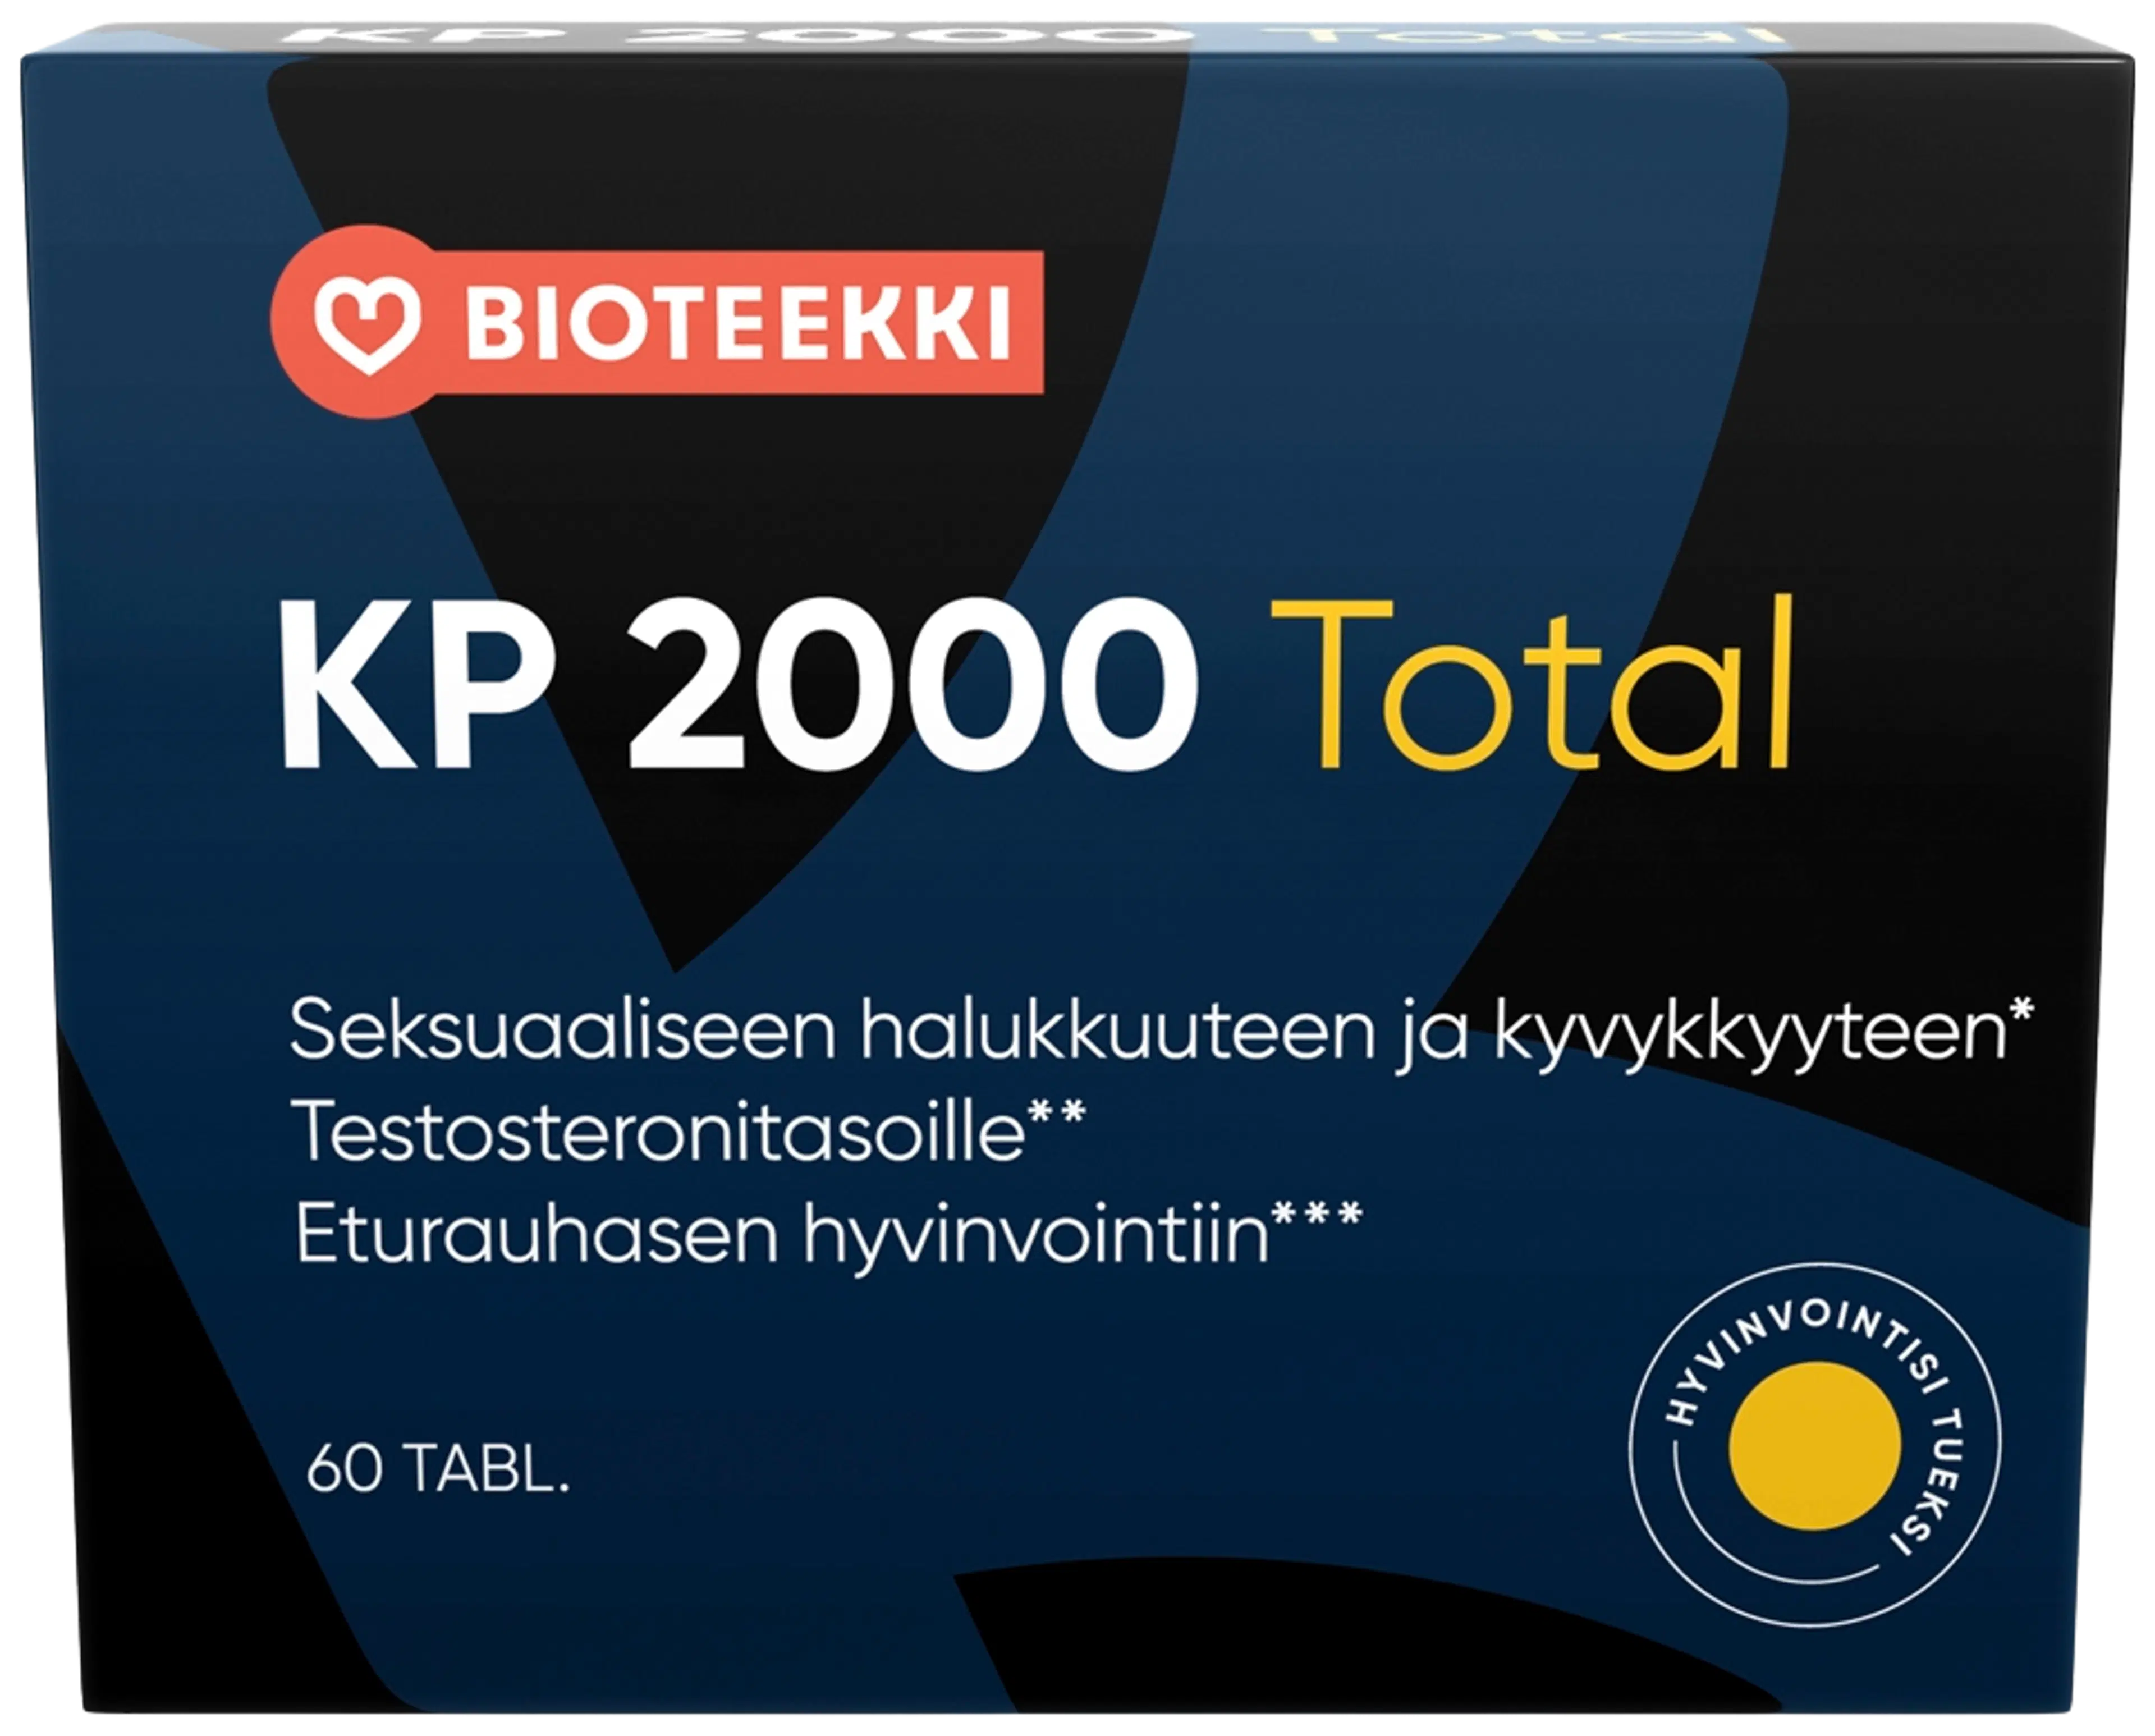 Bioteekin KP 2000 Total yrttiuutteita sisältävä ravintolisä 60 tabl/56g